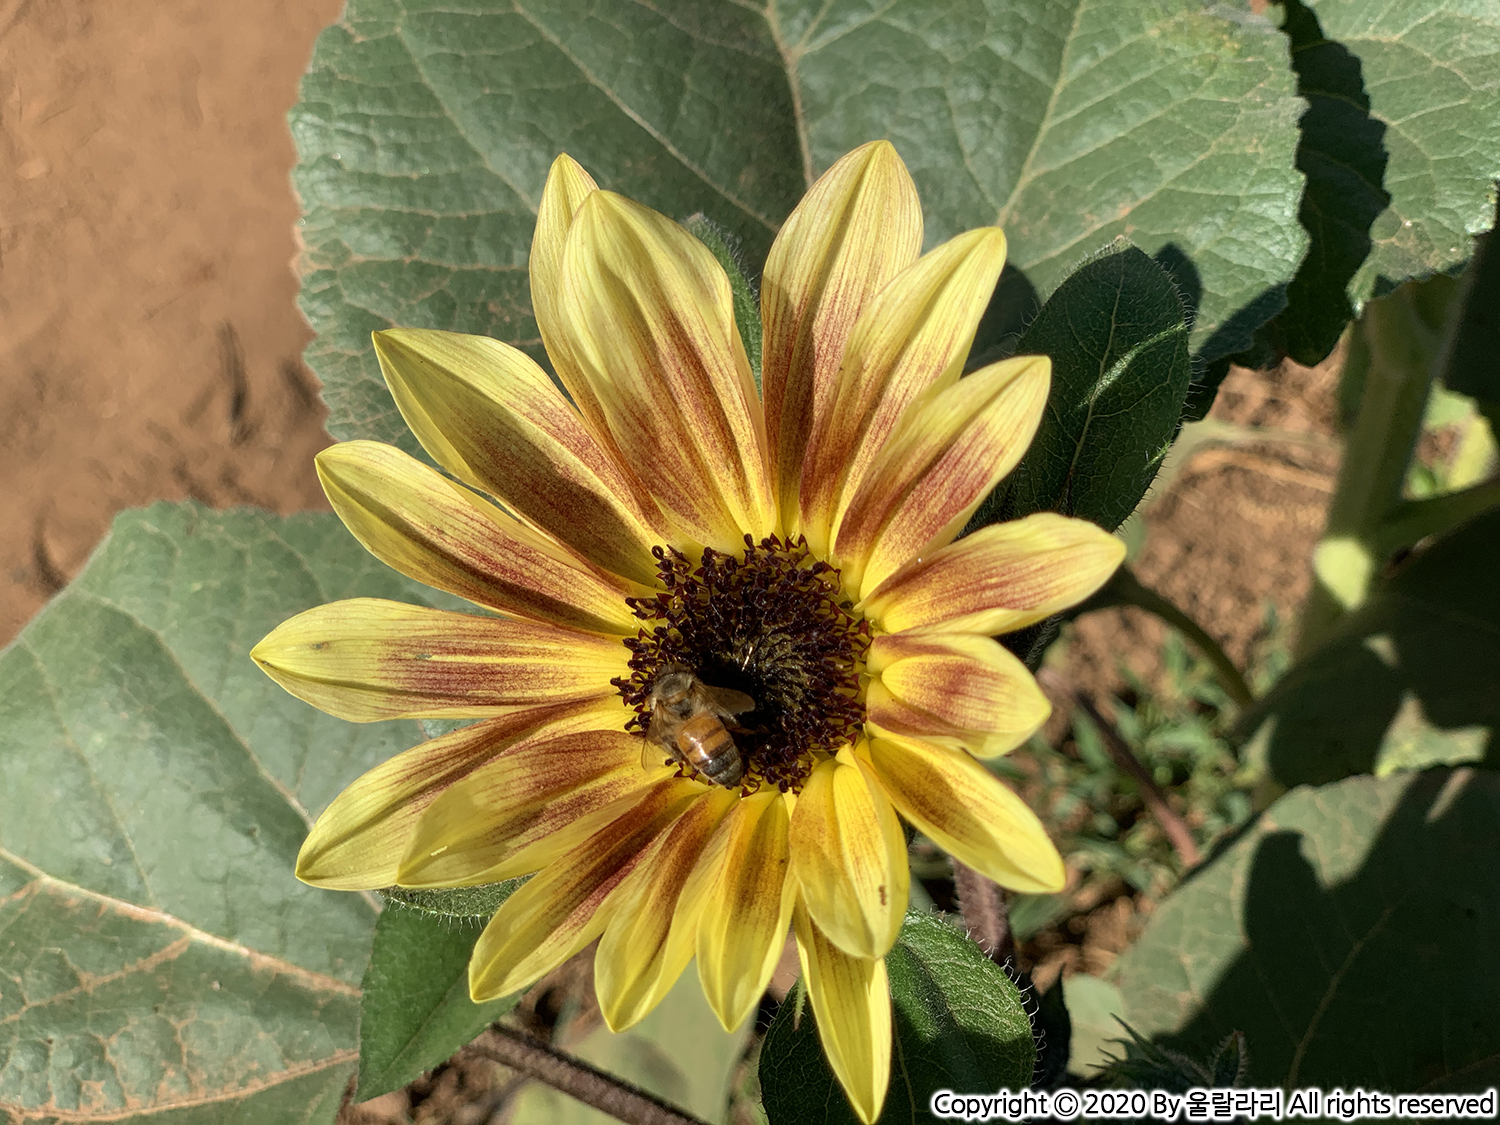 캘리포니아 해바라기 구경하기 좋은 곳 the best sunflower fields in southern california